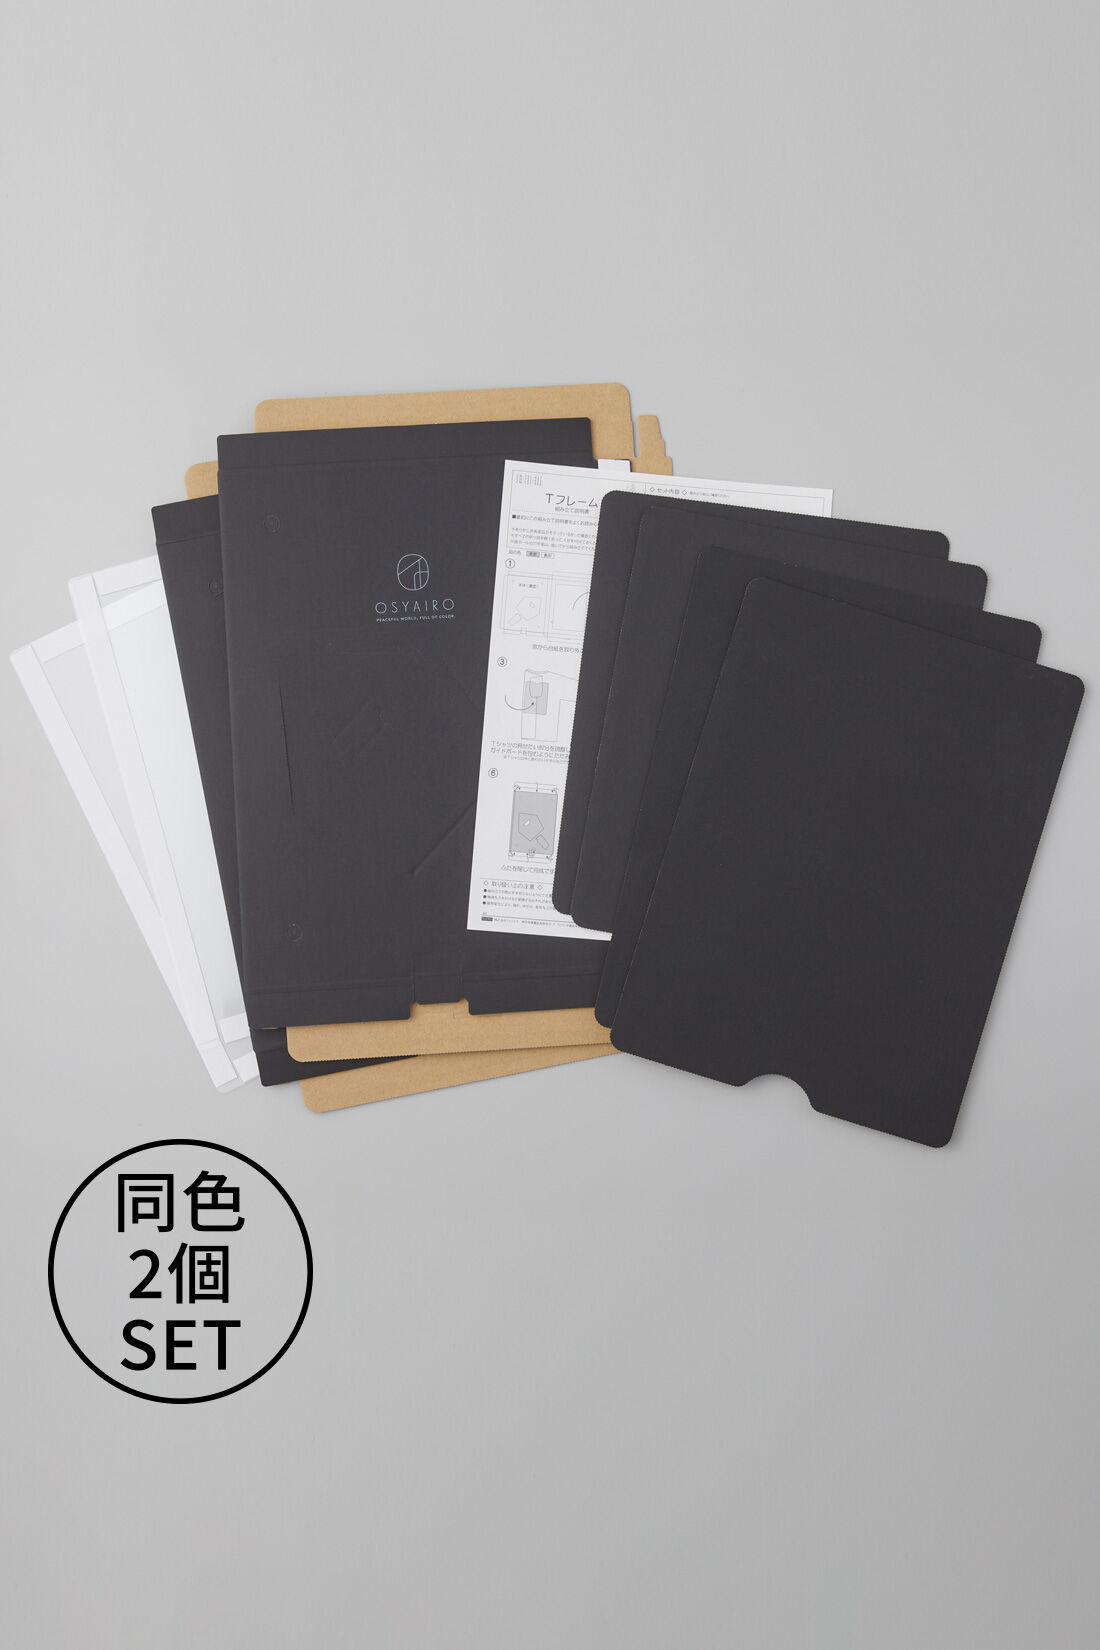 OSYAIRO|OSYAIRO  推しを飾って収納できるTフレーム〈ブラック〉|簡単な組み立て式の２個セットです。Tシャツをきれいにたたむためのガイドボードも付いています。